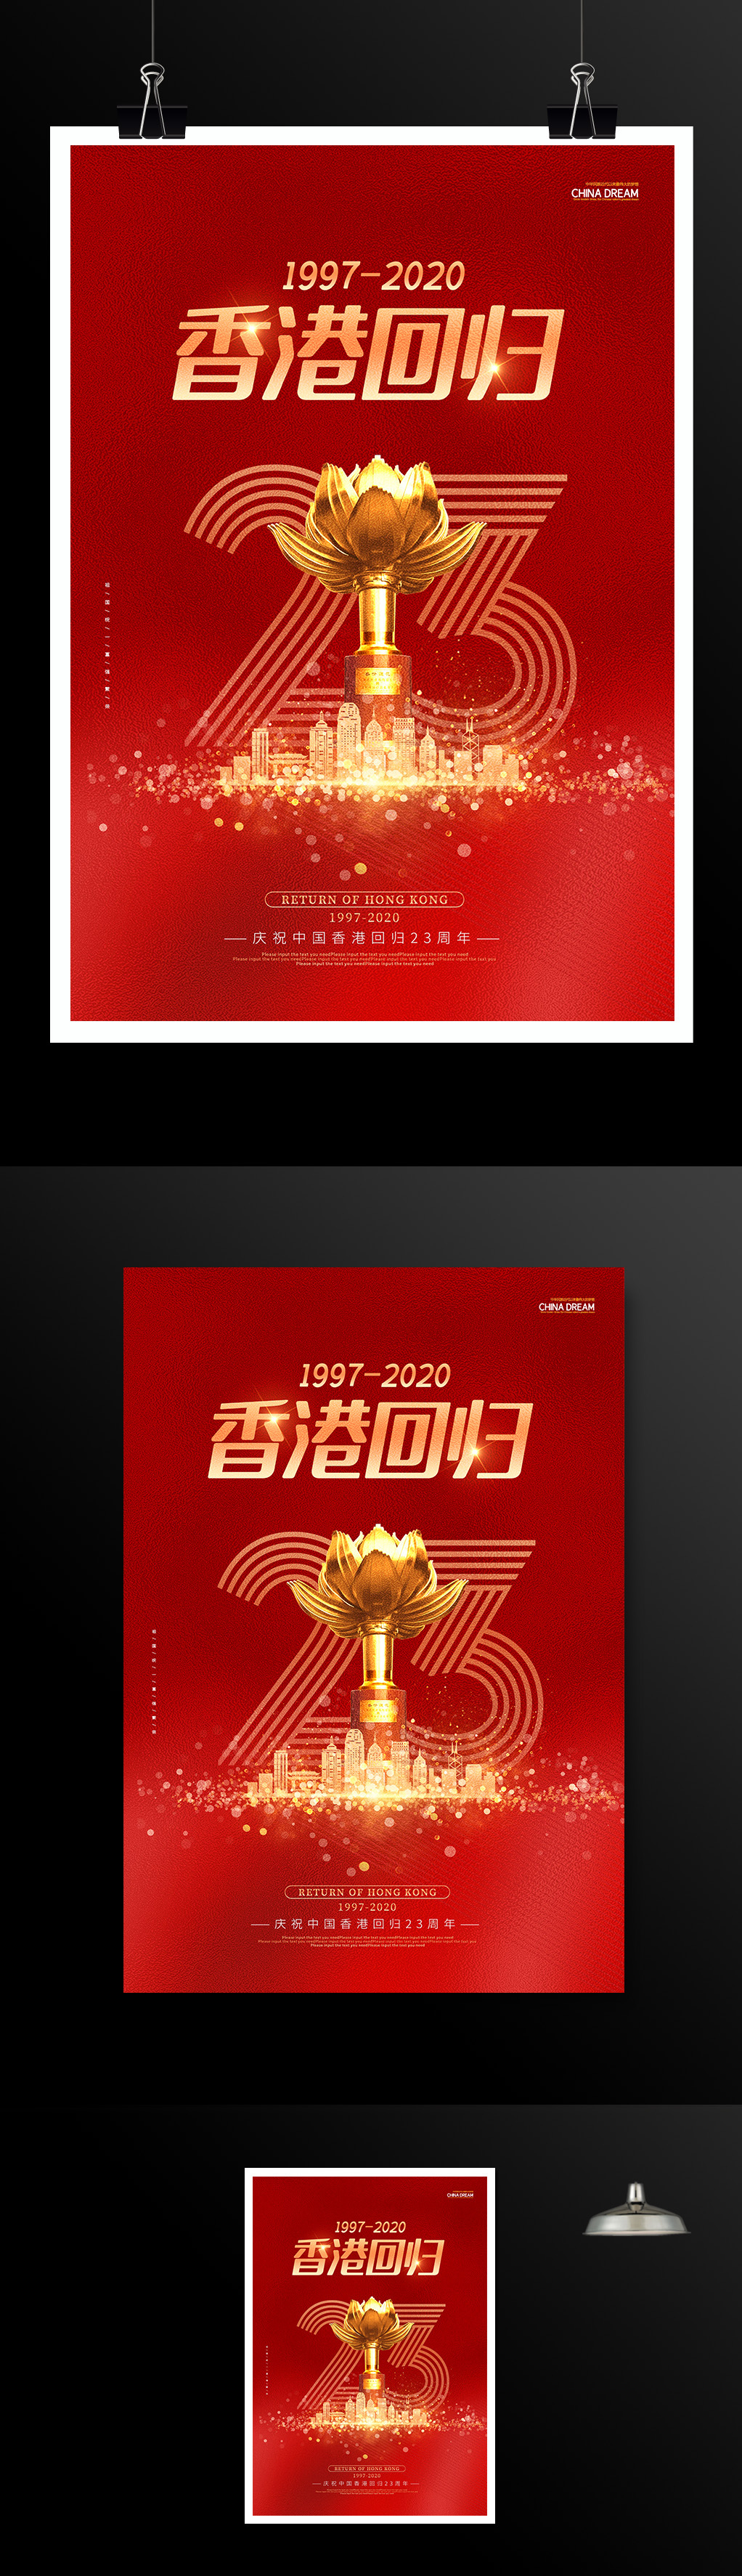 红色大气香港回归23周年宣传海报设计